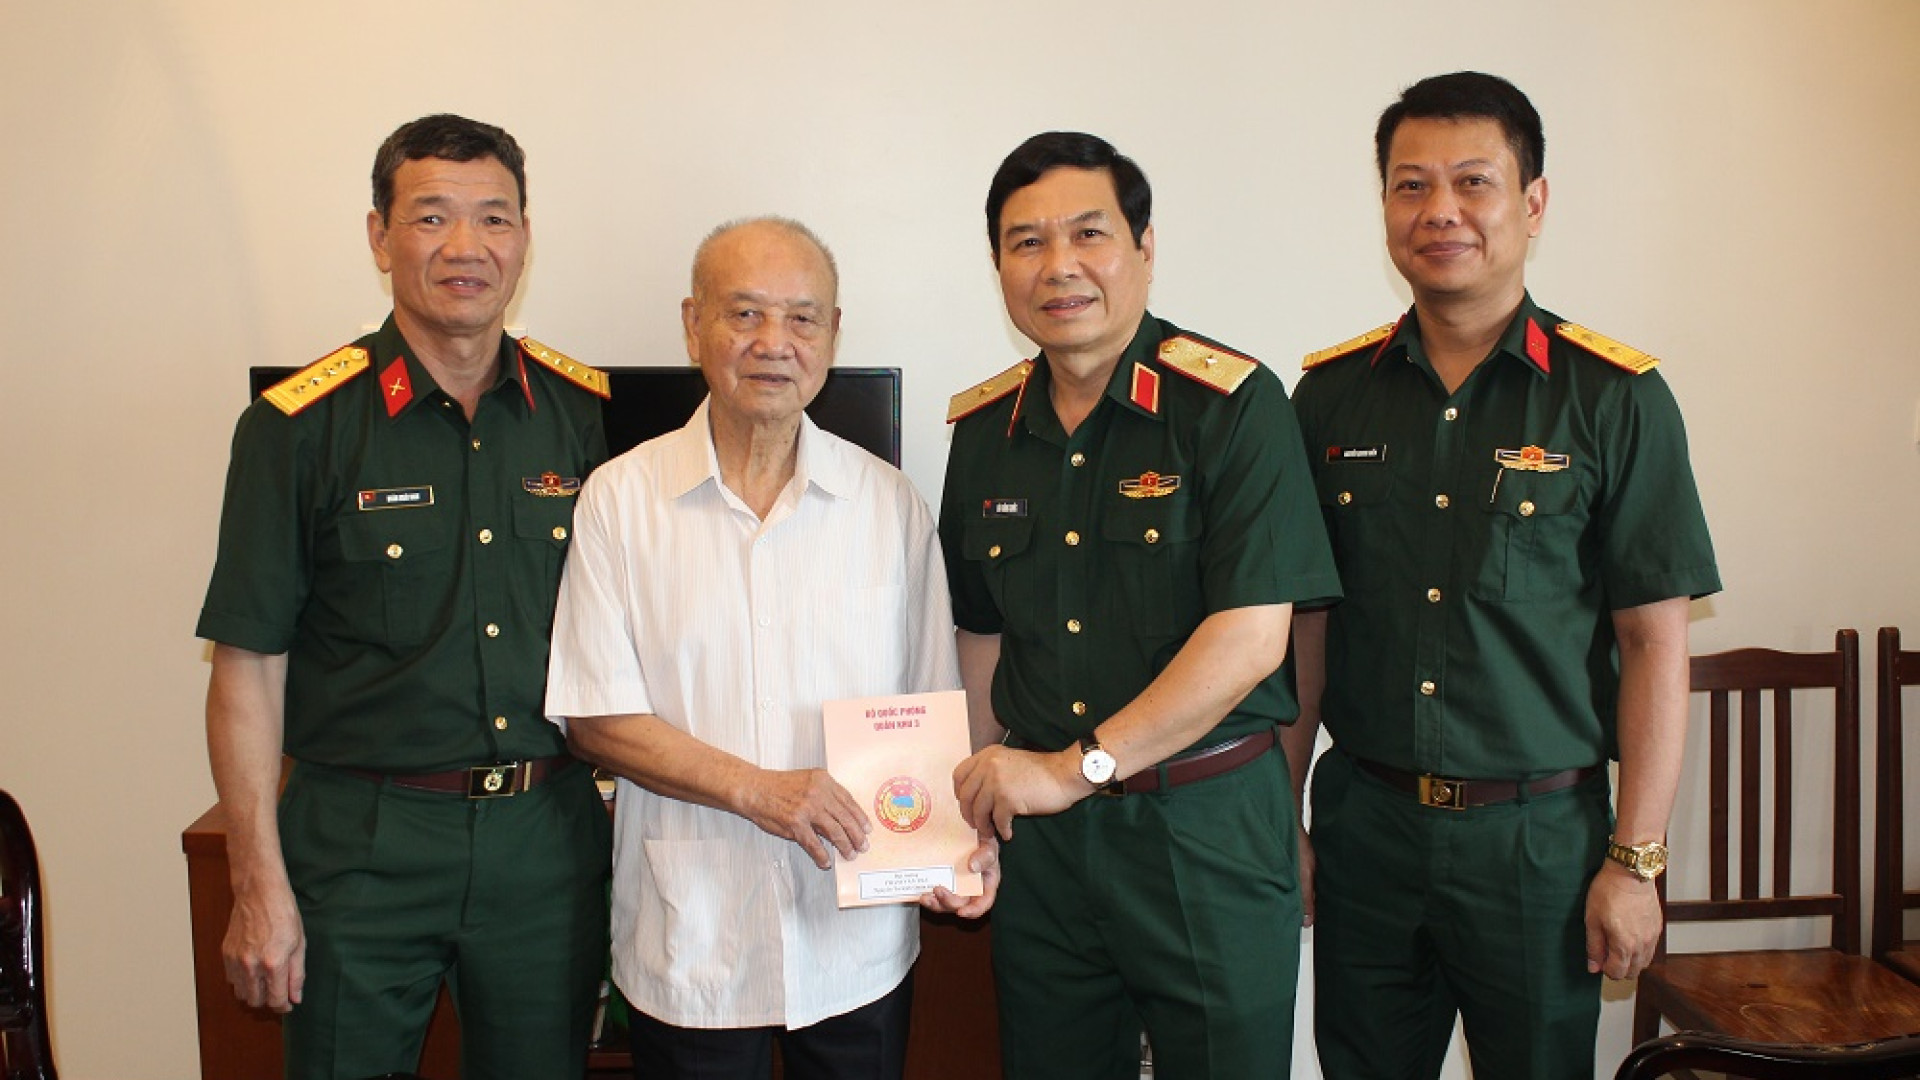 Bộ tư lệnh Quân khu thăm, tặng quà các đồng chí nguyên là Thủ trưởng Bộ tư lệnh Quân khu nhân kỷ niệm 70 năm Chiến thắng Điện Biên Phủ